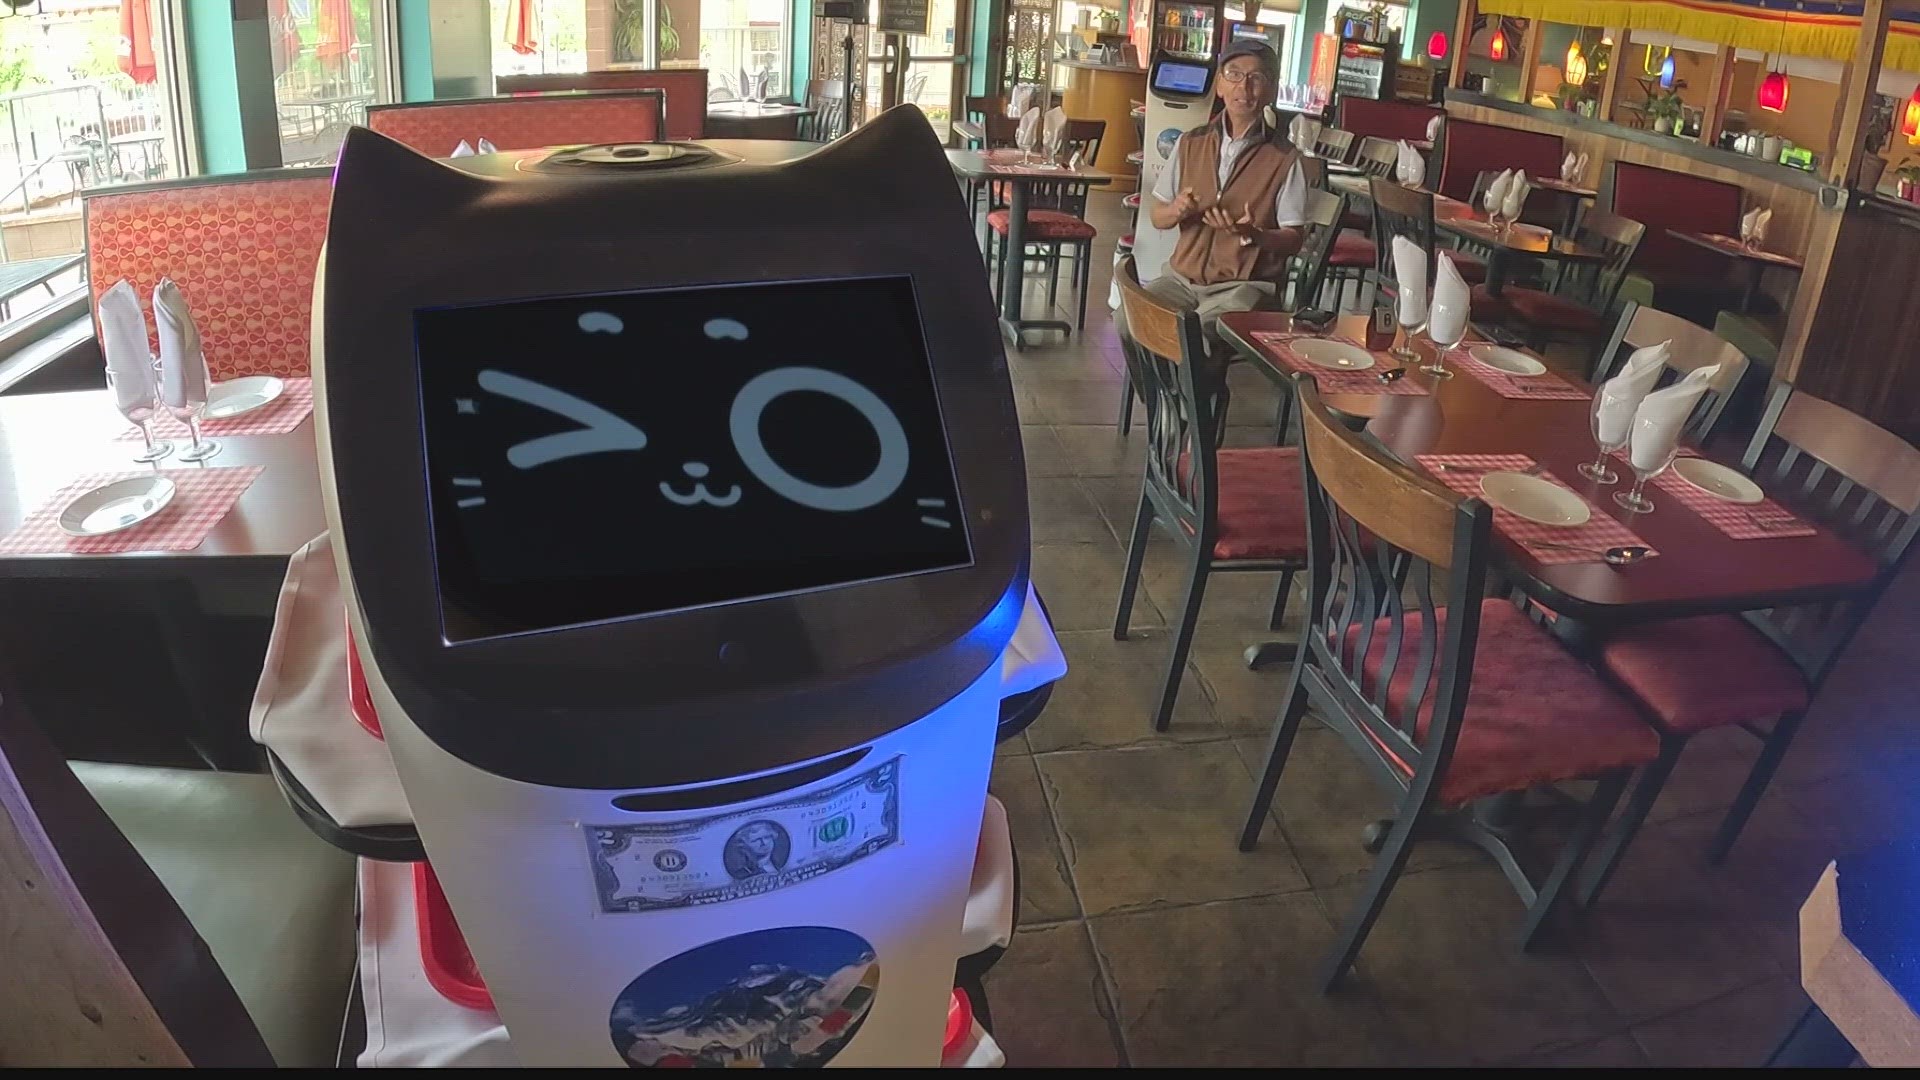 Colorado uses robots servers 9news.com